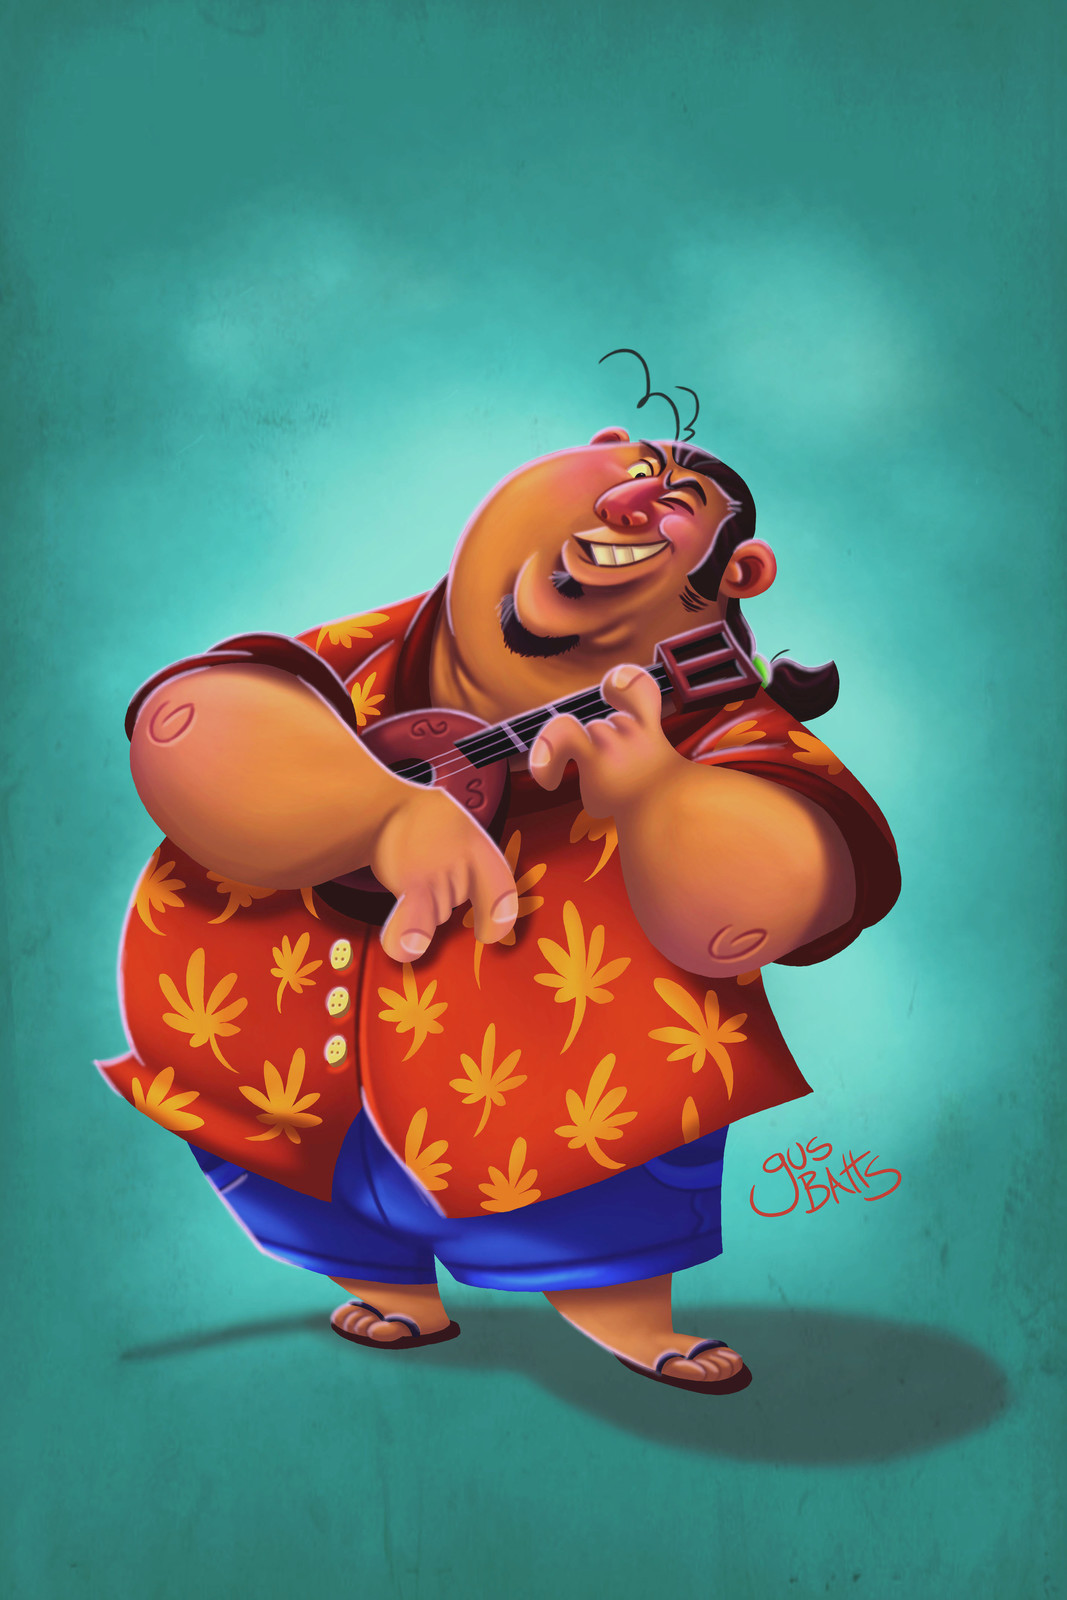 Hawaiian character design